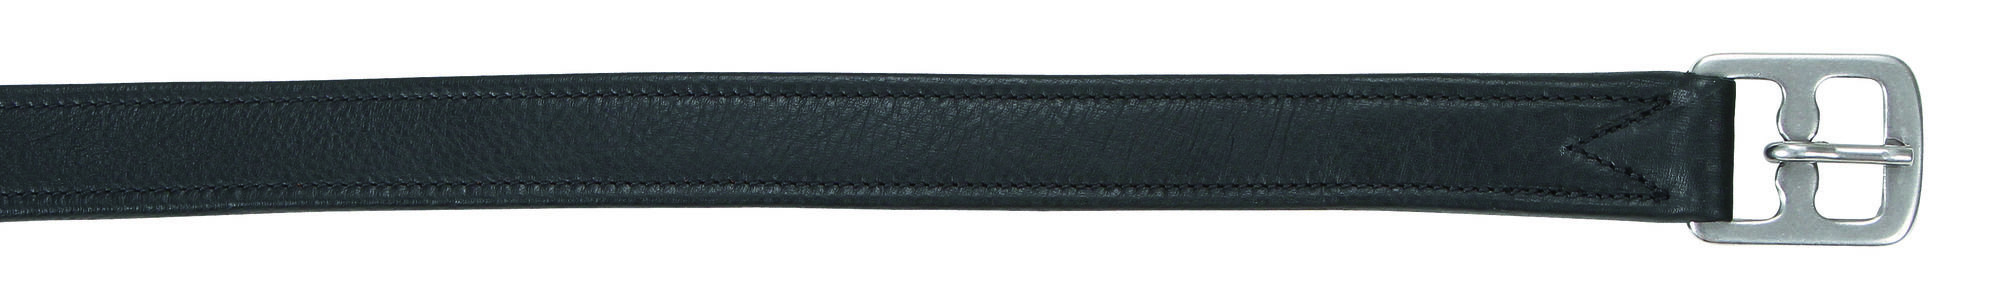 Steigbügelriemen Soft deLuxe - Leder (braun oder schwarz)